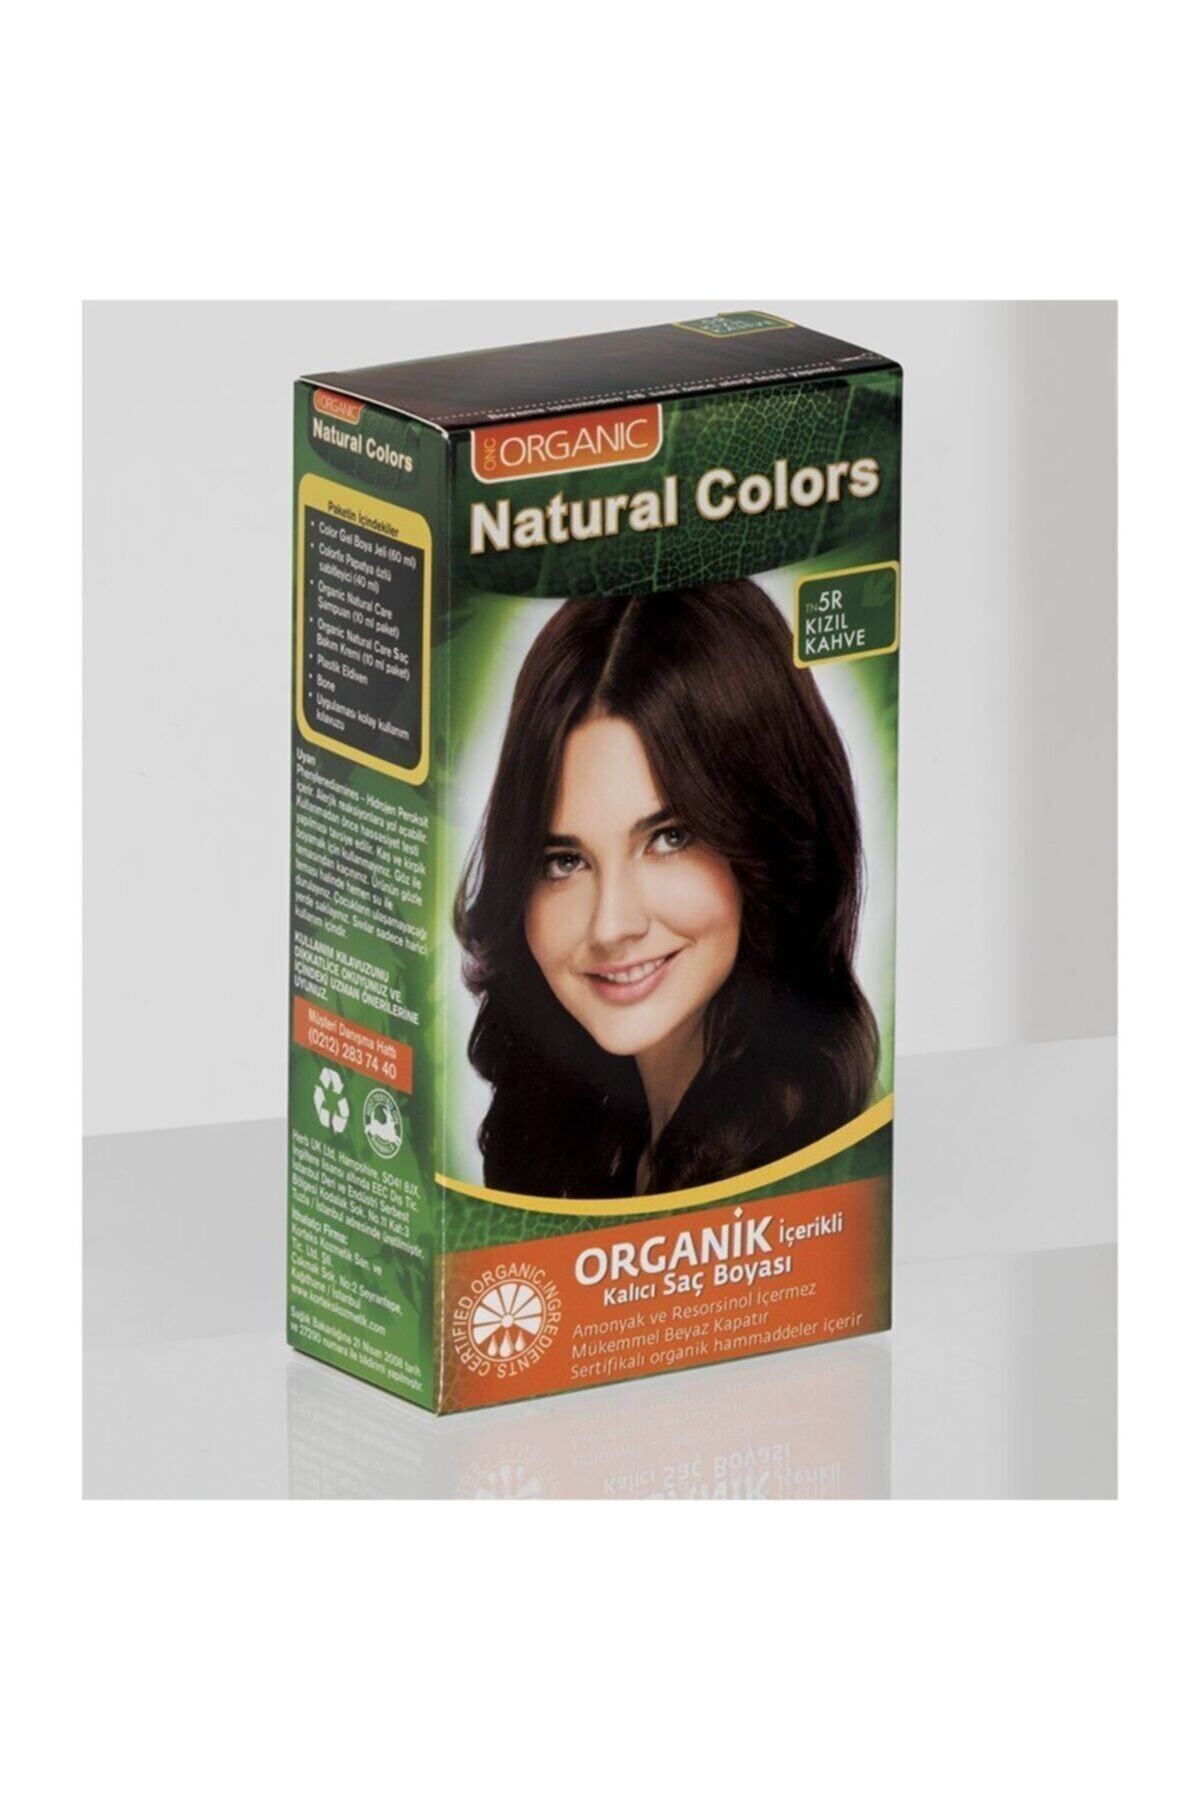 Organic Natural Colors Kadın Kızıl Kahve  Natural Colors 5r Organik Saç Boyası